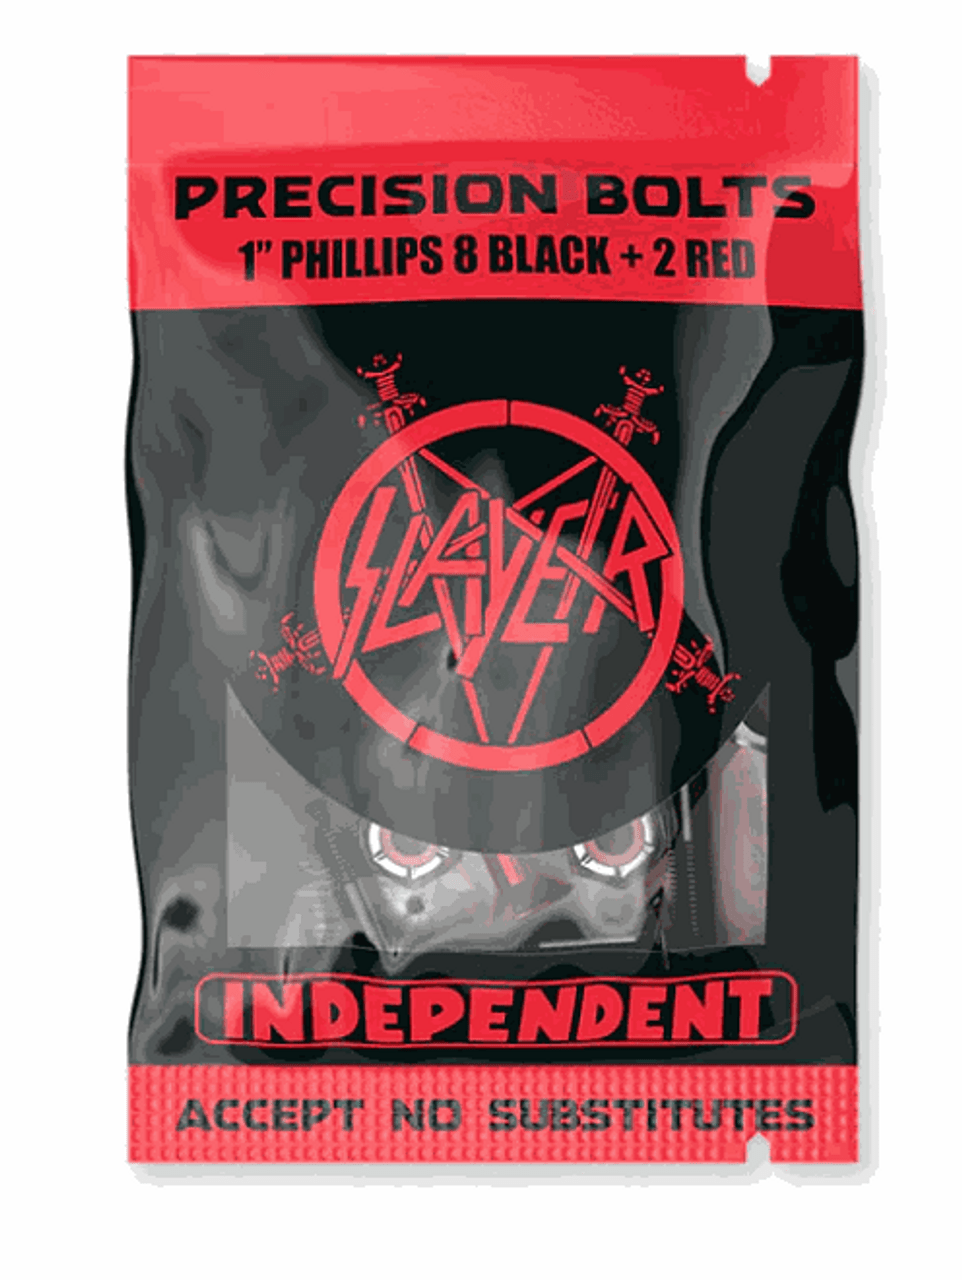 Independent x Slayer 1" Bolt Set - Phillips